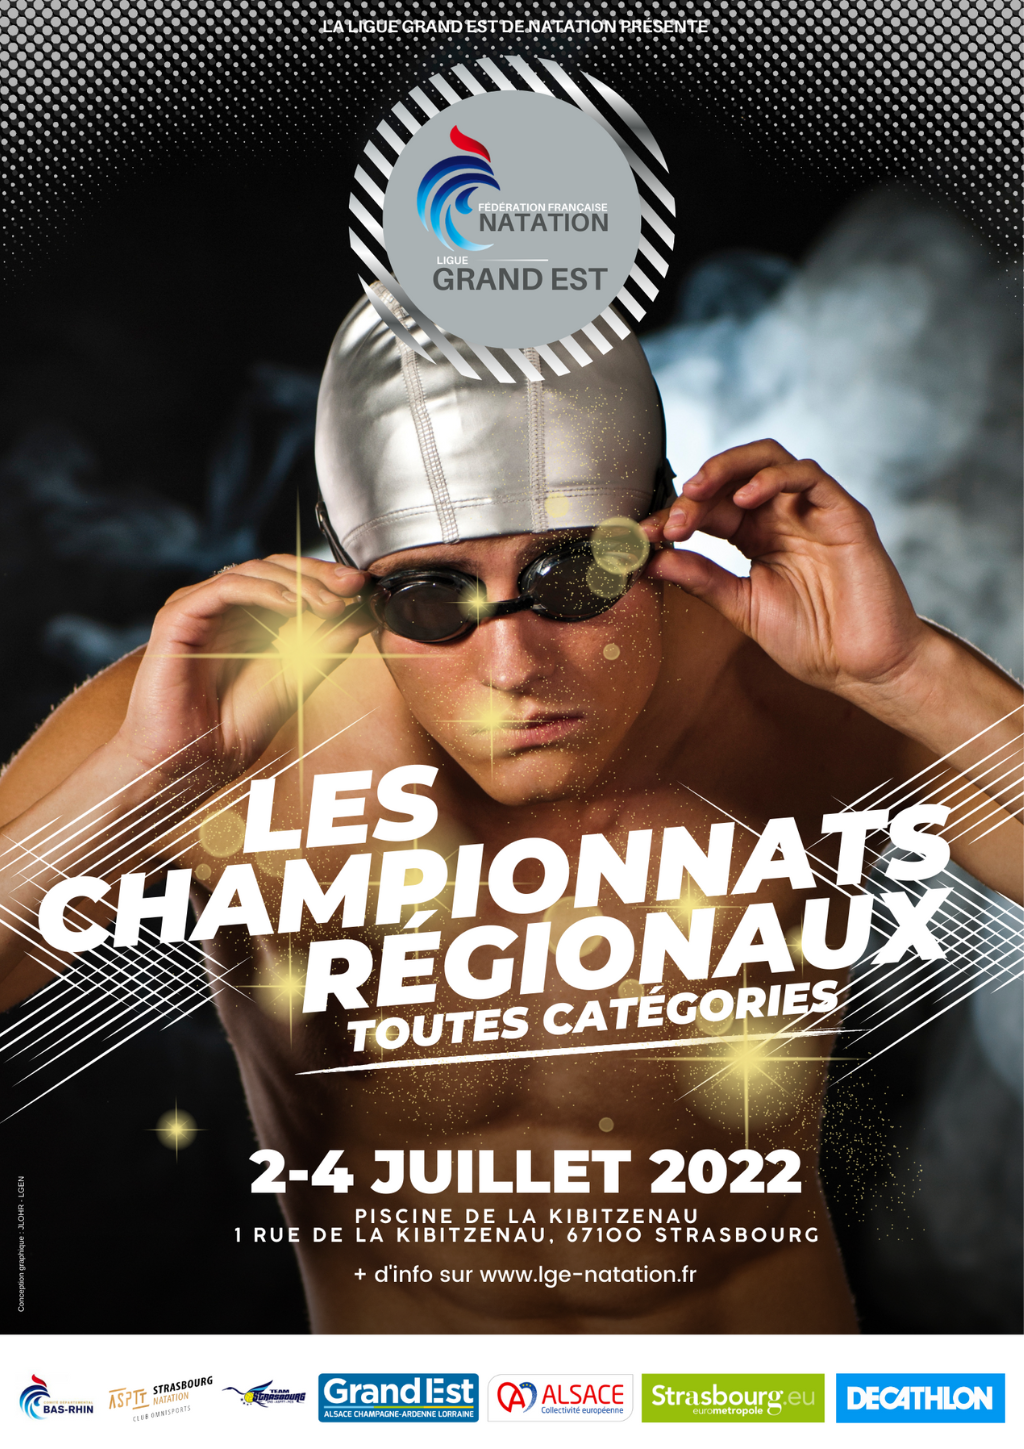 CHAMPIONNATS RÉGIONAUX ÉTÉ TOUTES CATÉGORIES] – Ligue Grand Est de natation